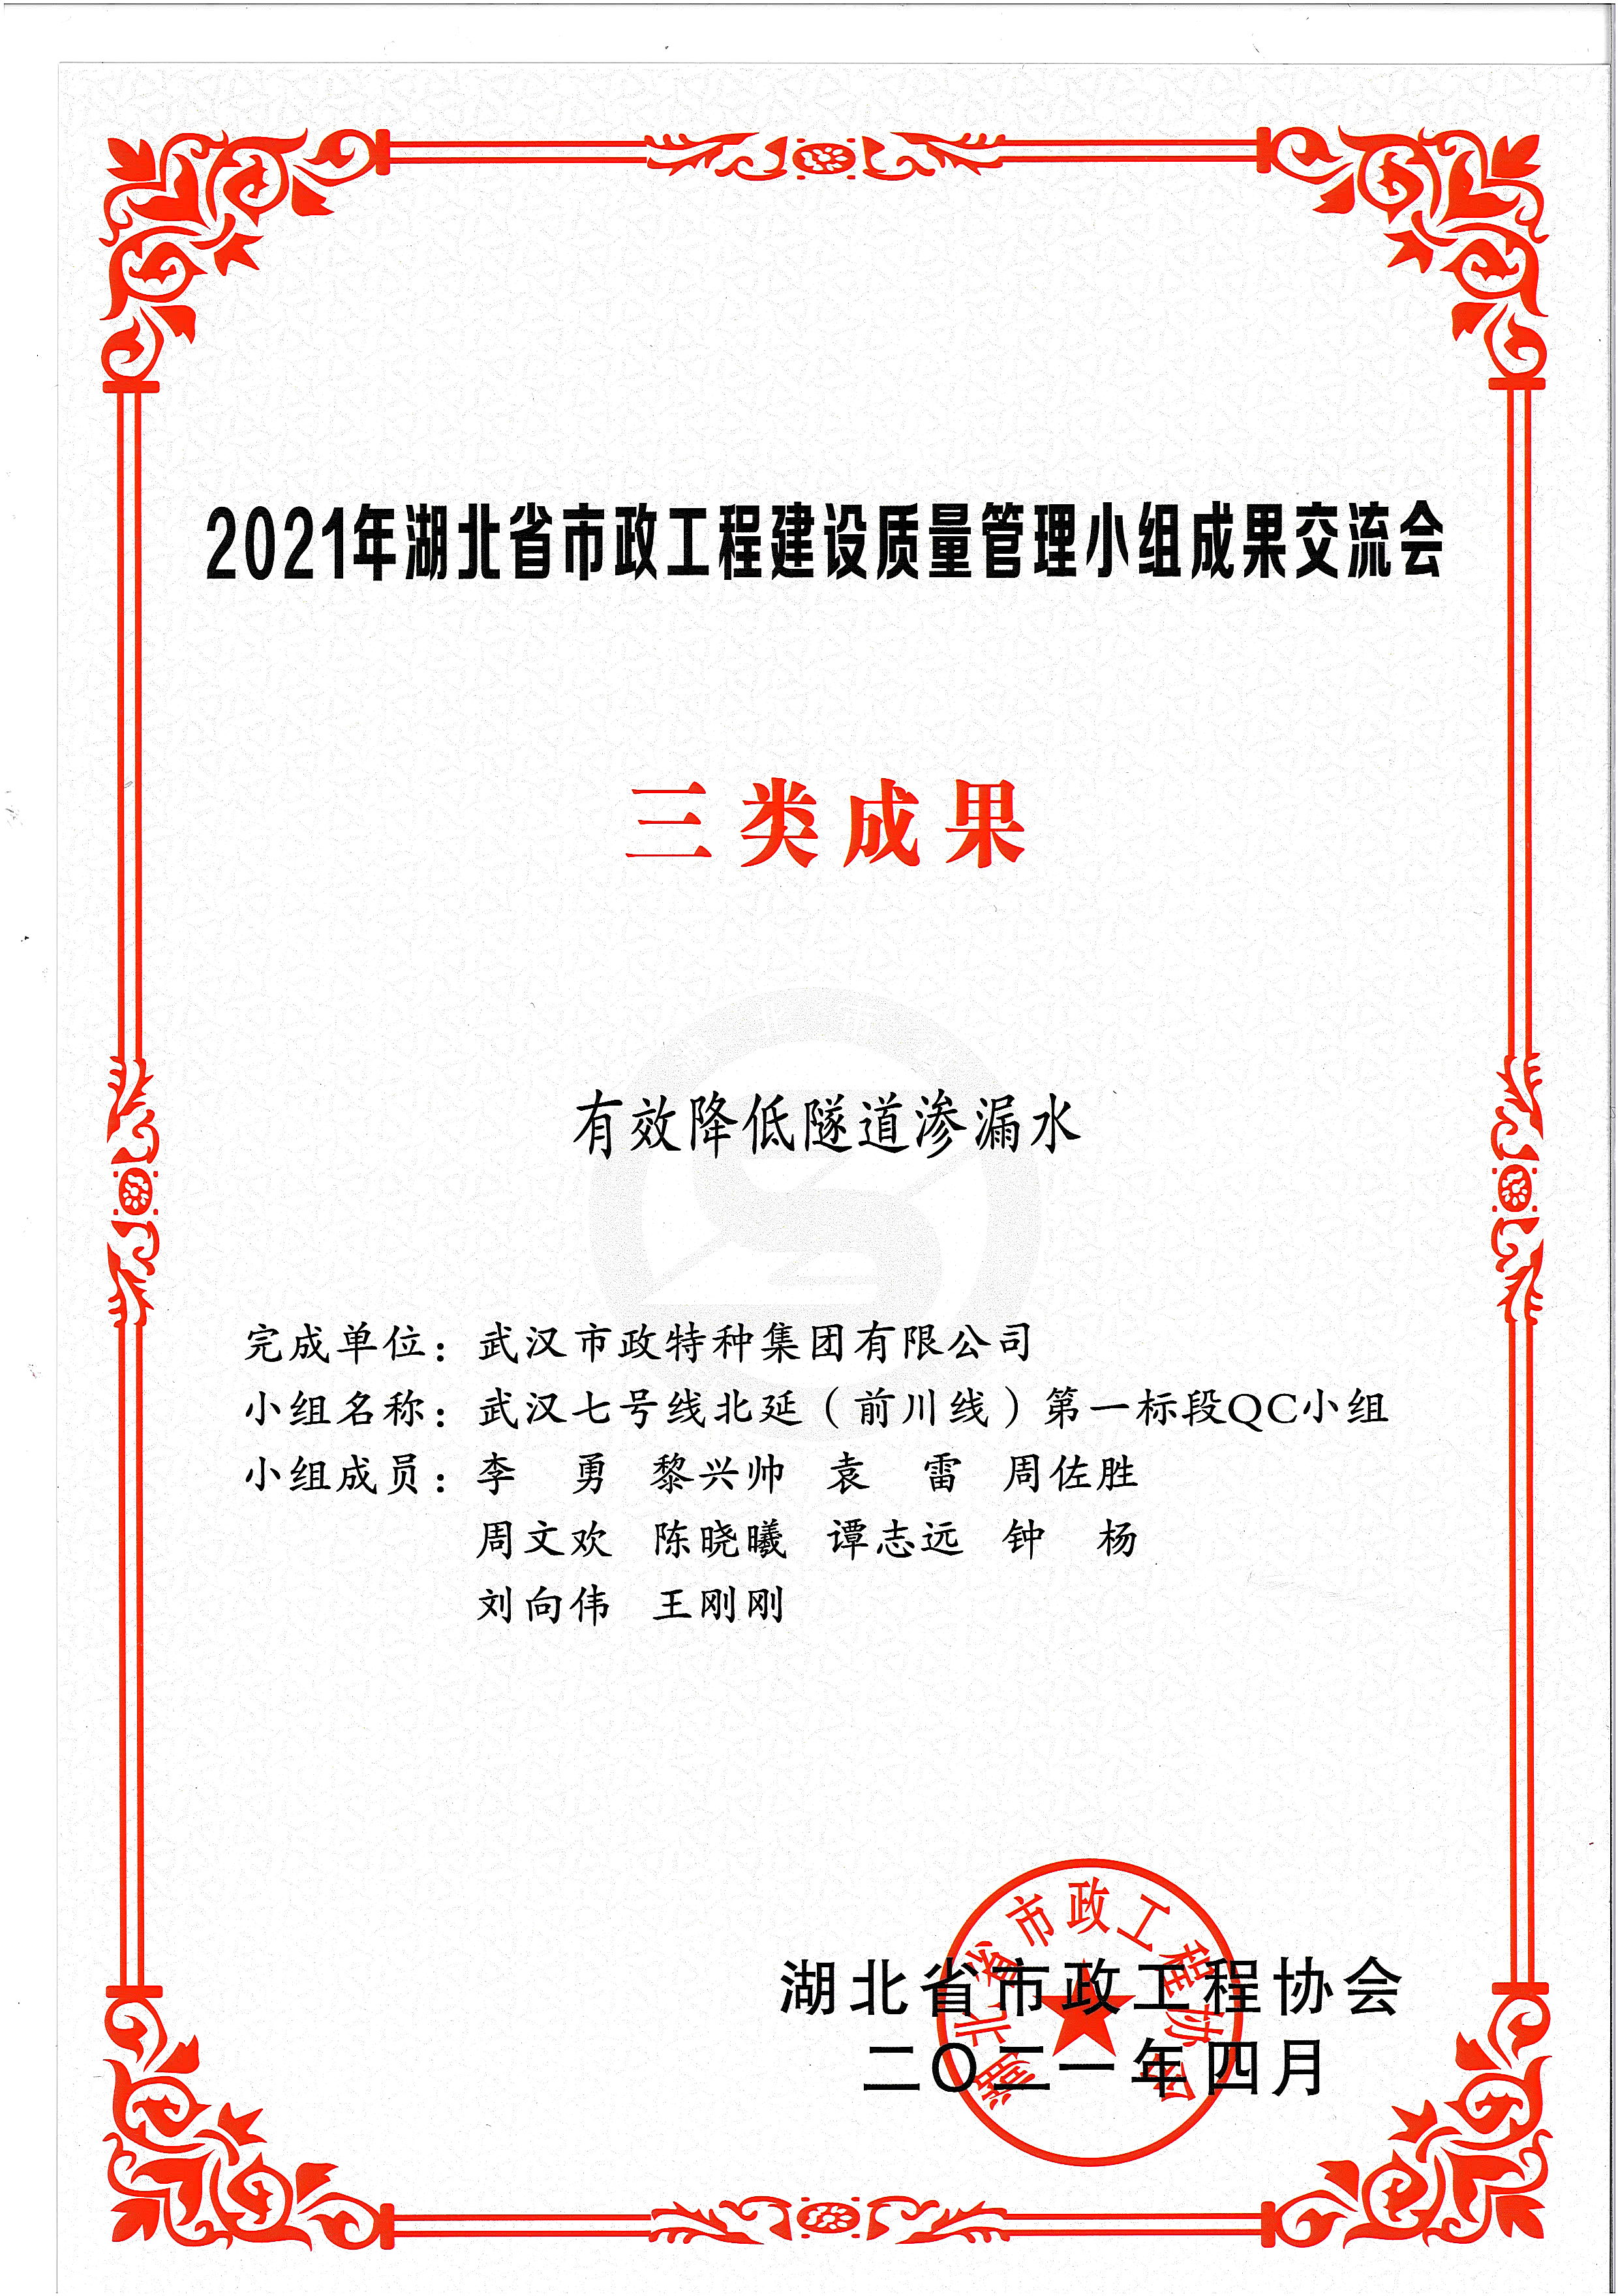 湖北省市政協會QC成果獎——有效降低隧道滲漏水